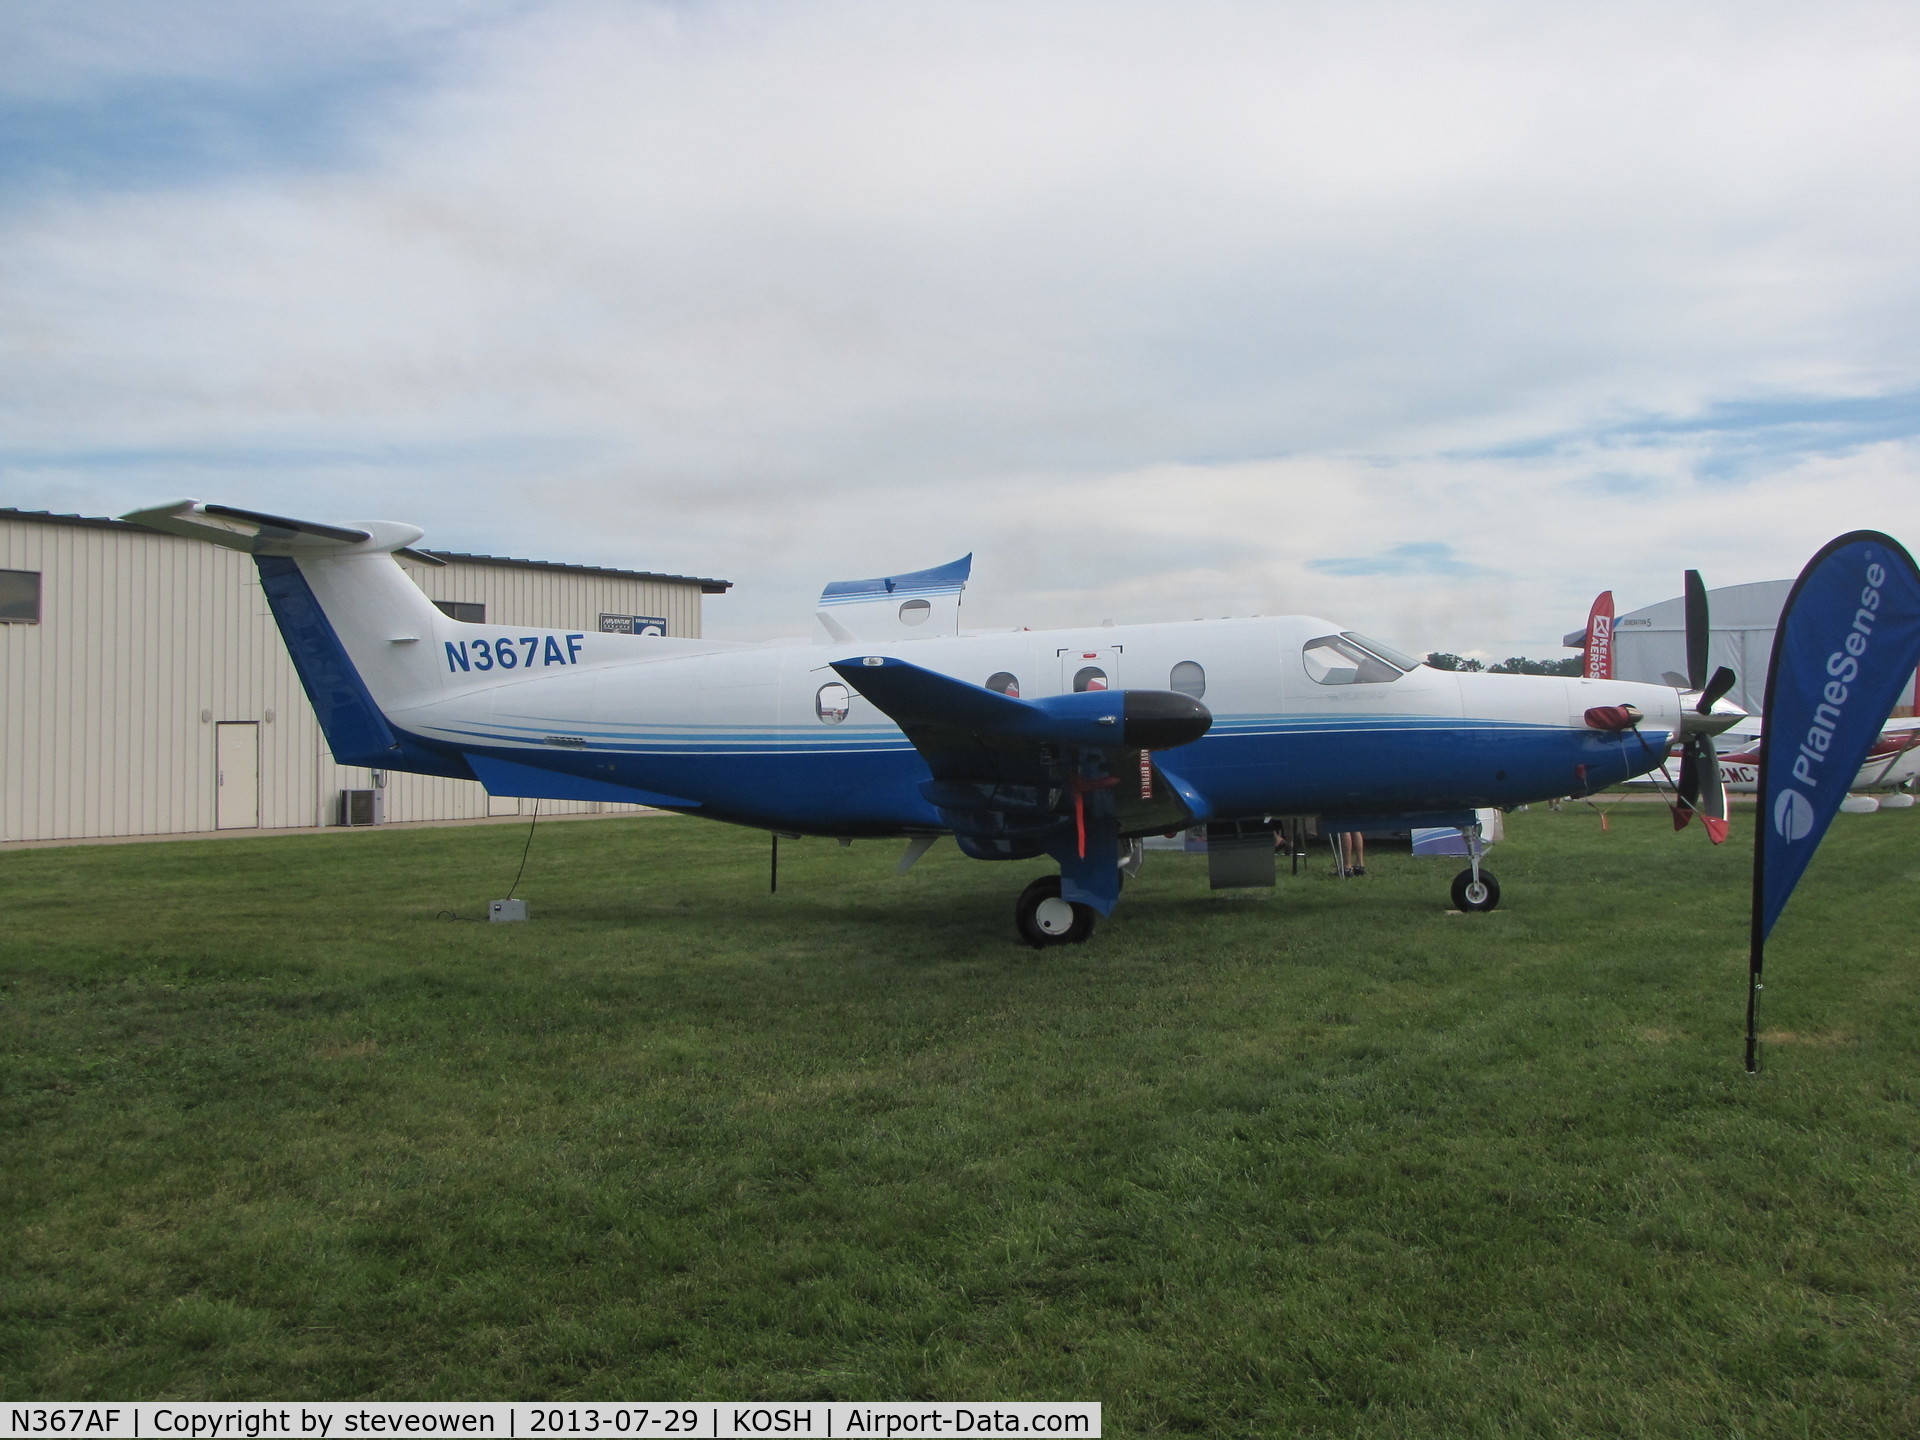 N367AF, 2012 Pilatus PC-12/47E C/N 1367, displayed at KOSH